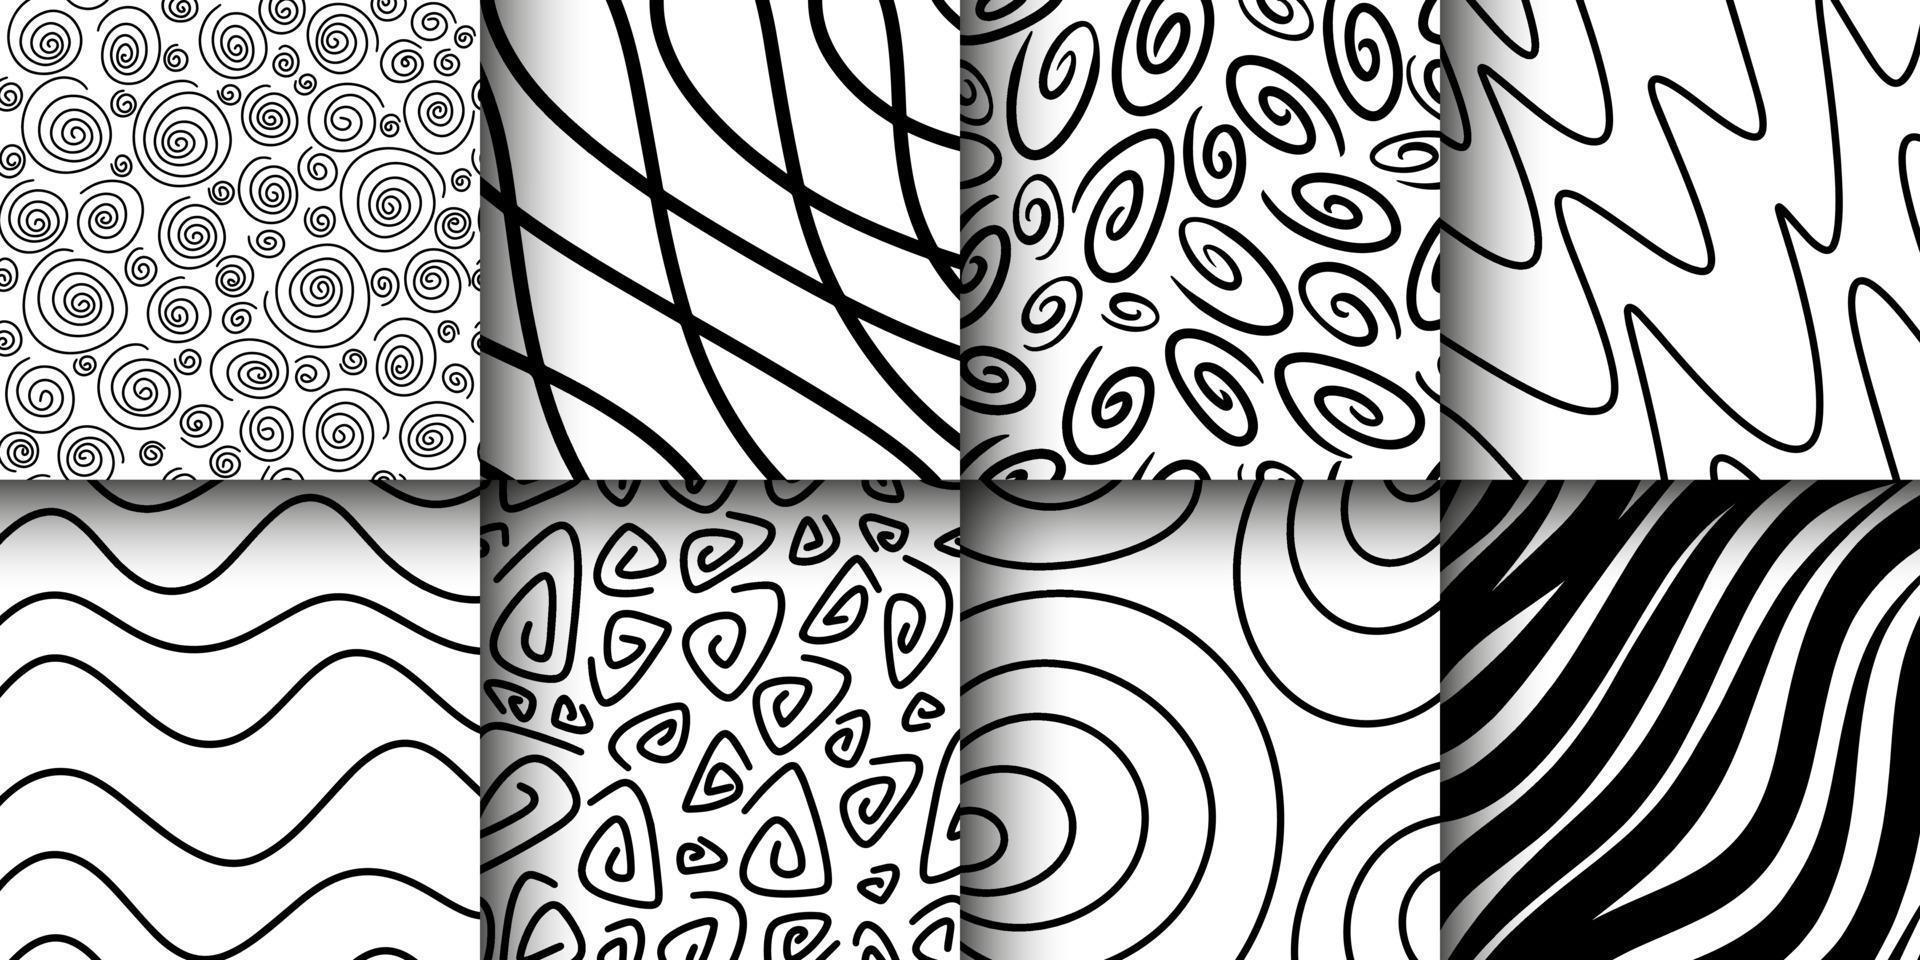 patrón de tinta dibujado a mano y conjunto de texturas. expresivos fondos vectoriales abstractos sin fisuras en blanco y negro. marcas de pincel monocromáticas de moda. conjunto de patrones dibujados a mano abstractos sin fisuras. vector moderno